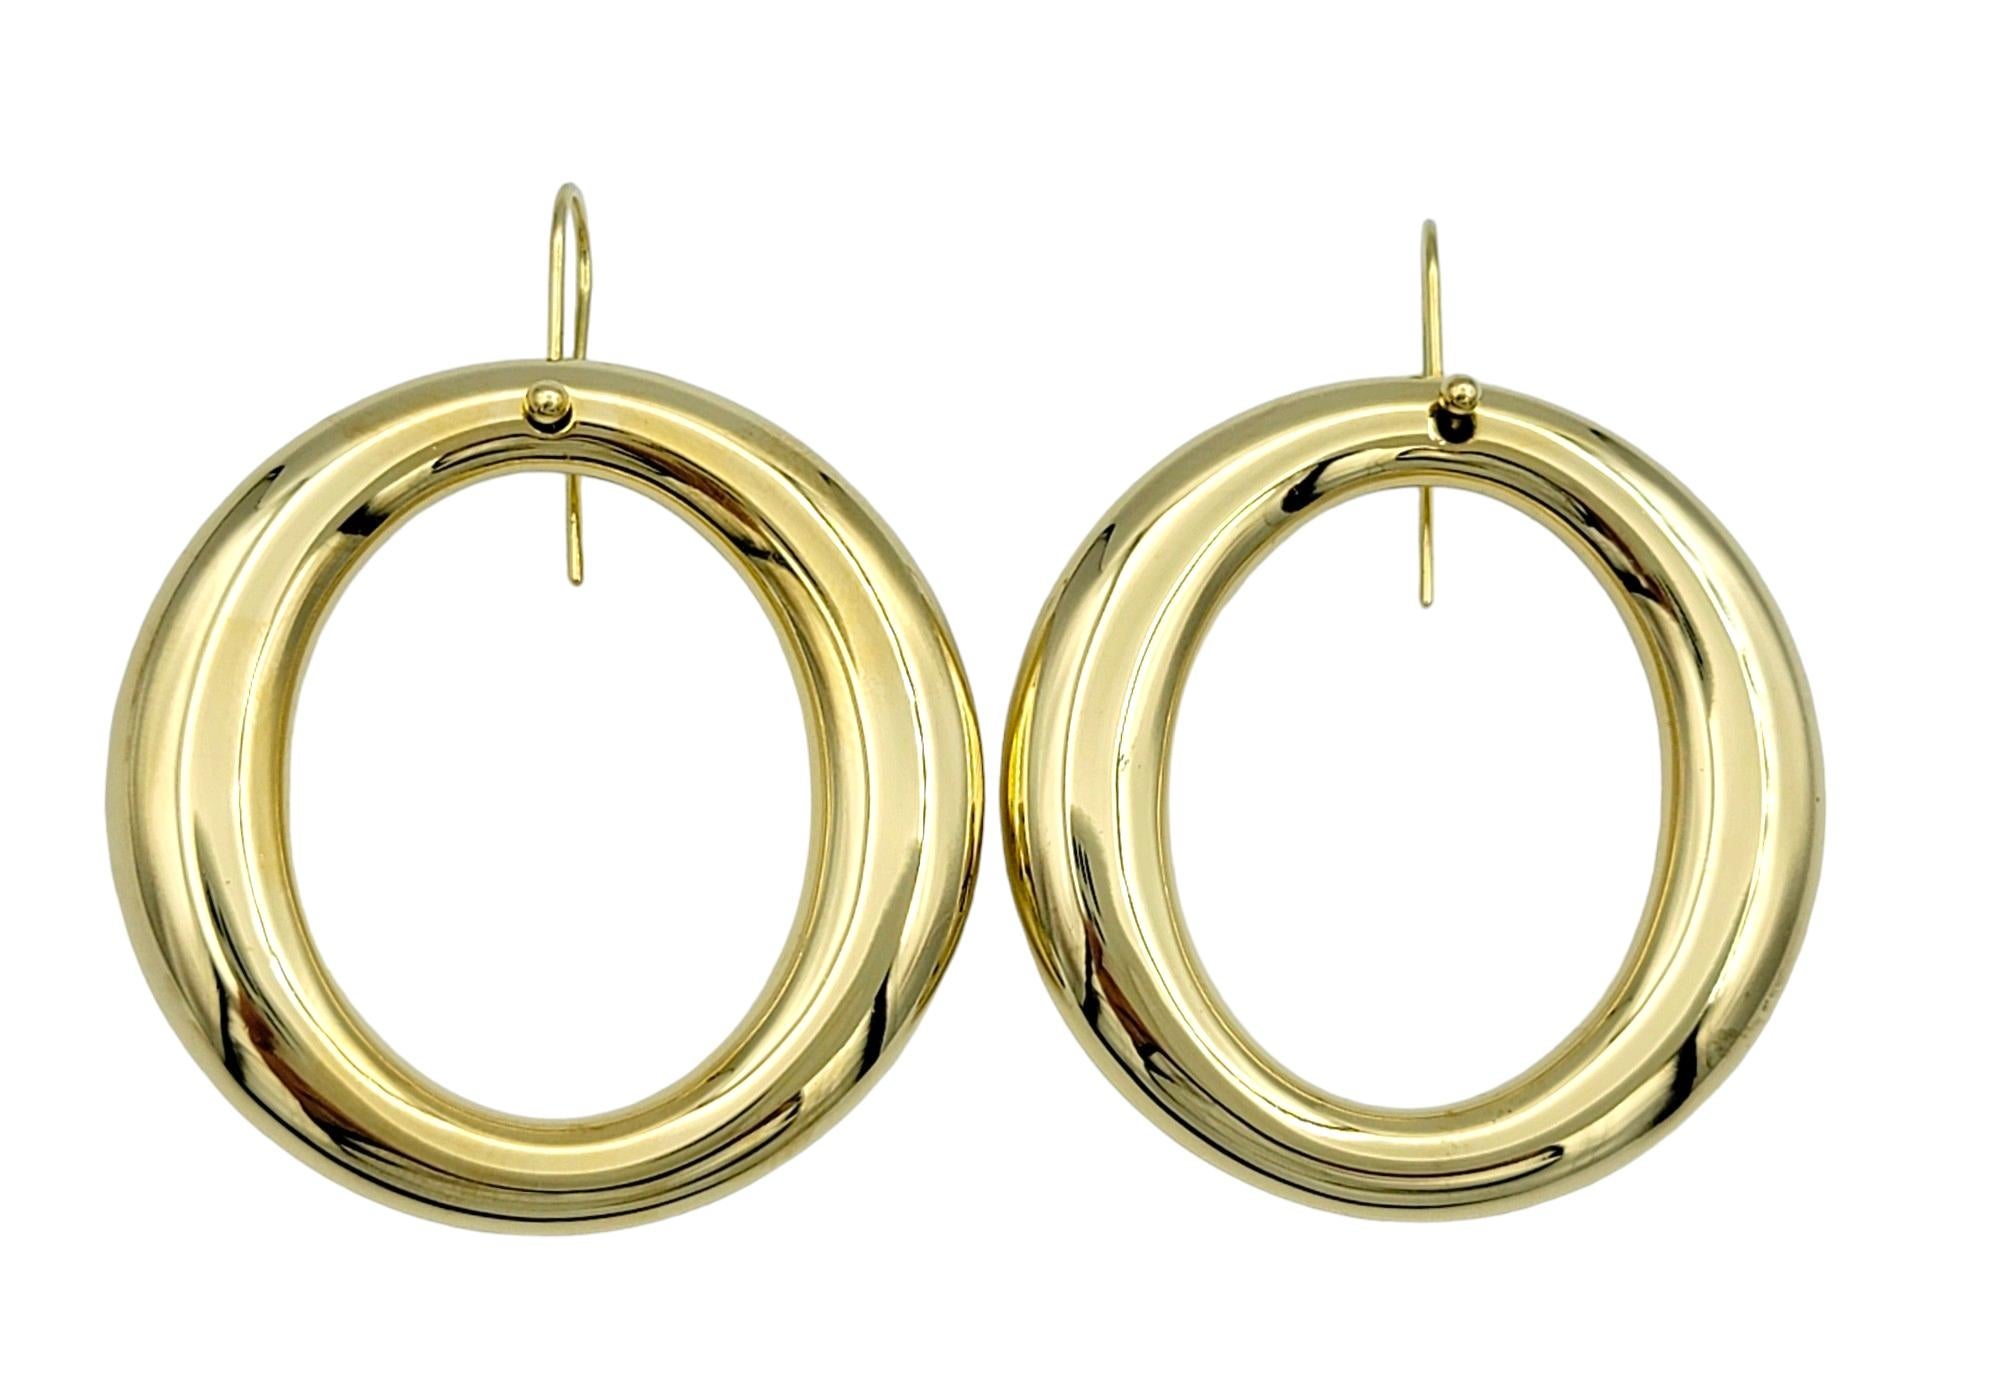 Ces élégantes boucles d'oreilles de la collection Elsa Peretti Sevillana de Tiffany & Co. présentent un design intemporel en forme de cercle ouvert et sont serties dans de l'or jaune 18 carats lustré. La simplicité du design est rehaussée par le